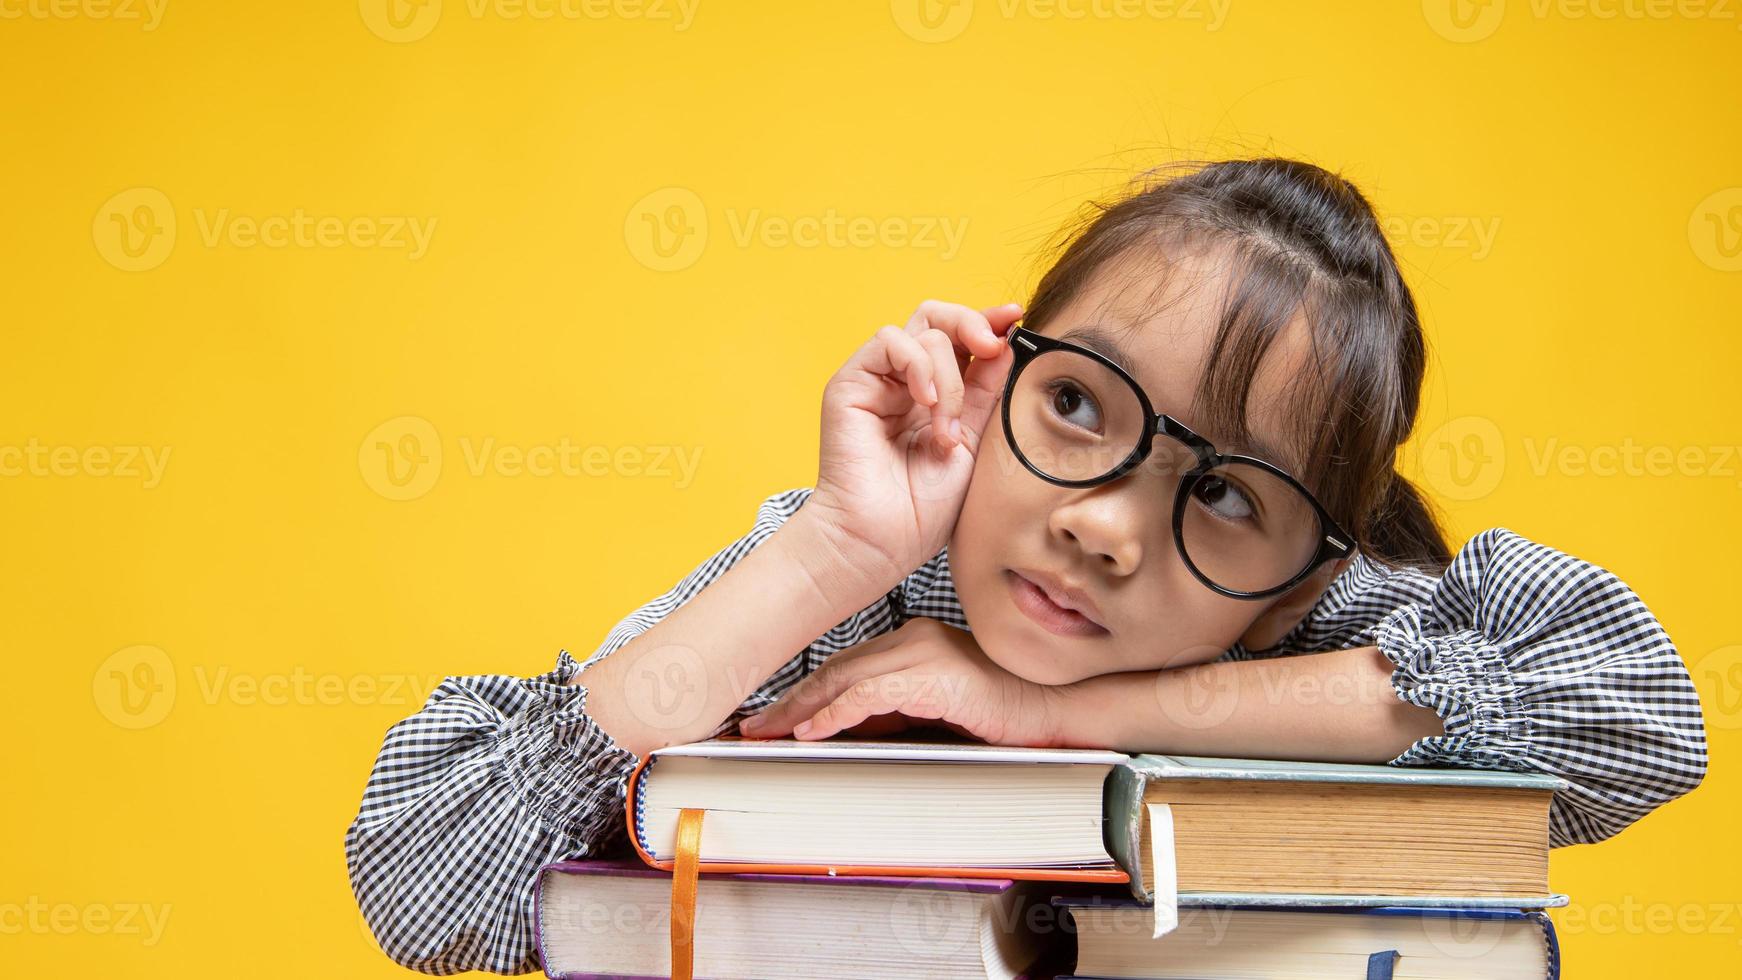 Jeune fille thaïlandaise s'appuyant sur une pile de livres, touchant ses lunettes et pensant en studio avec fond jaune photo